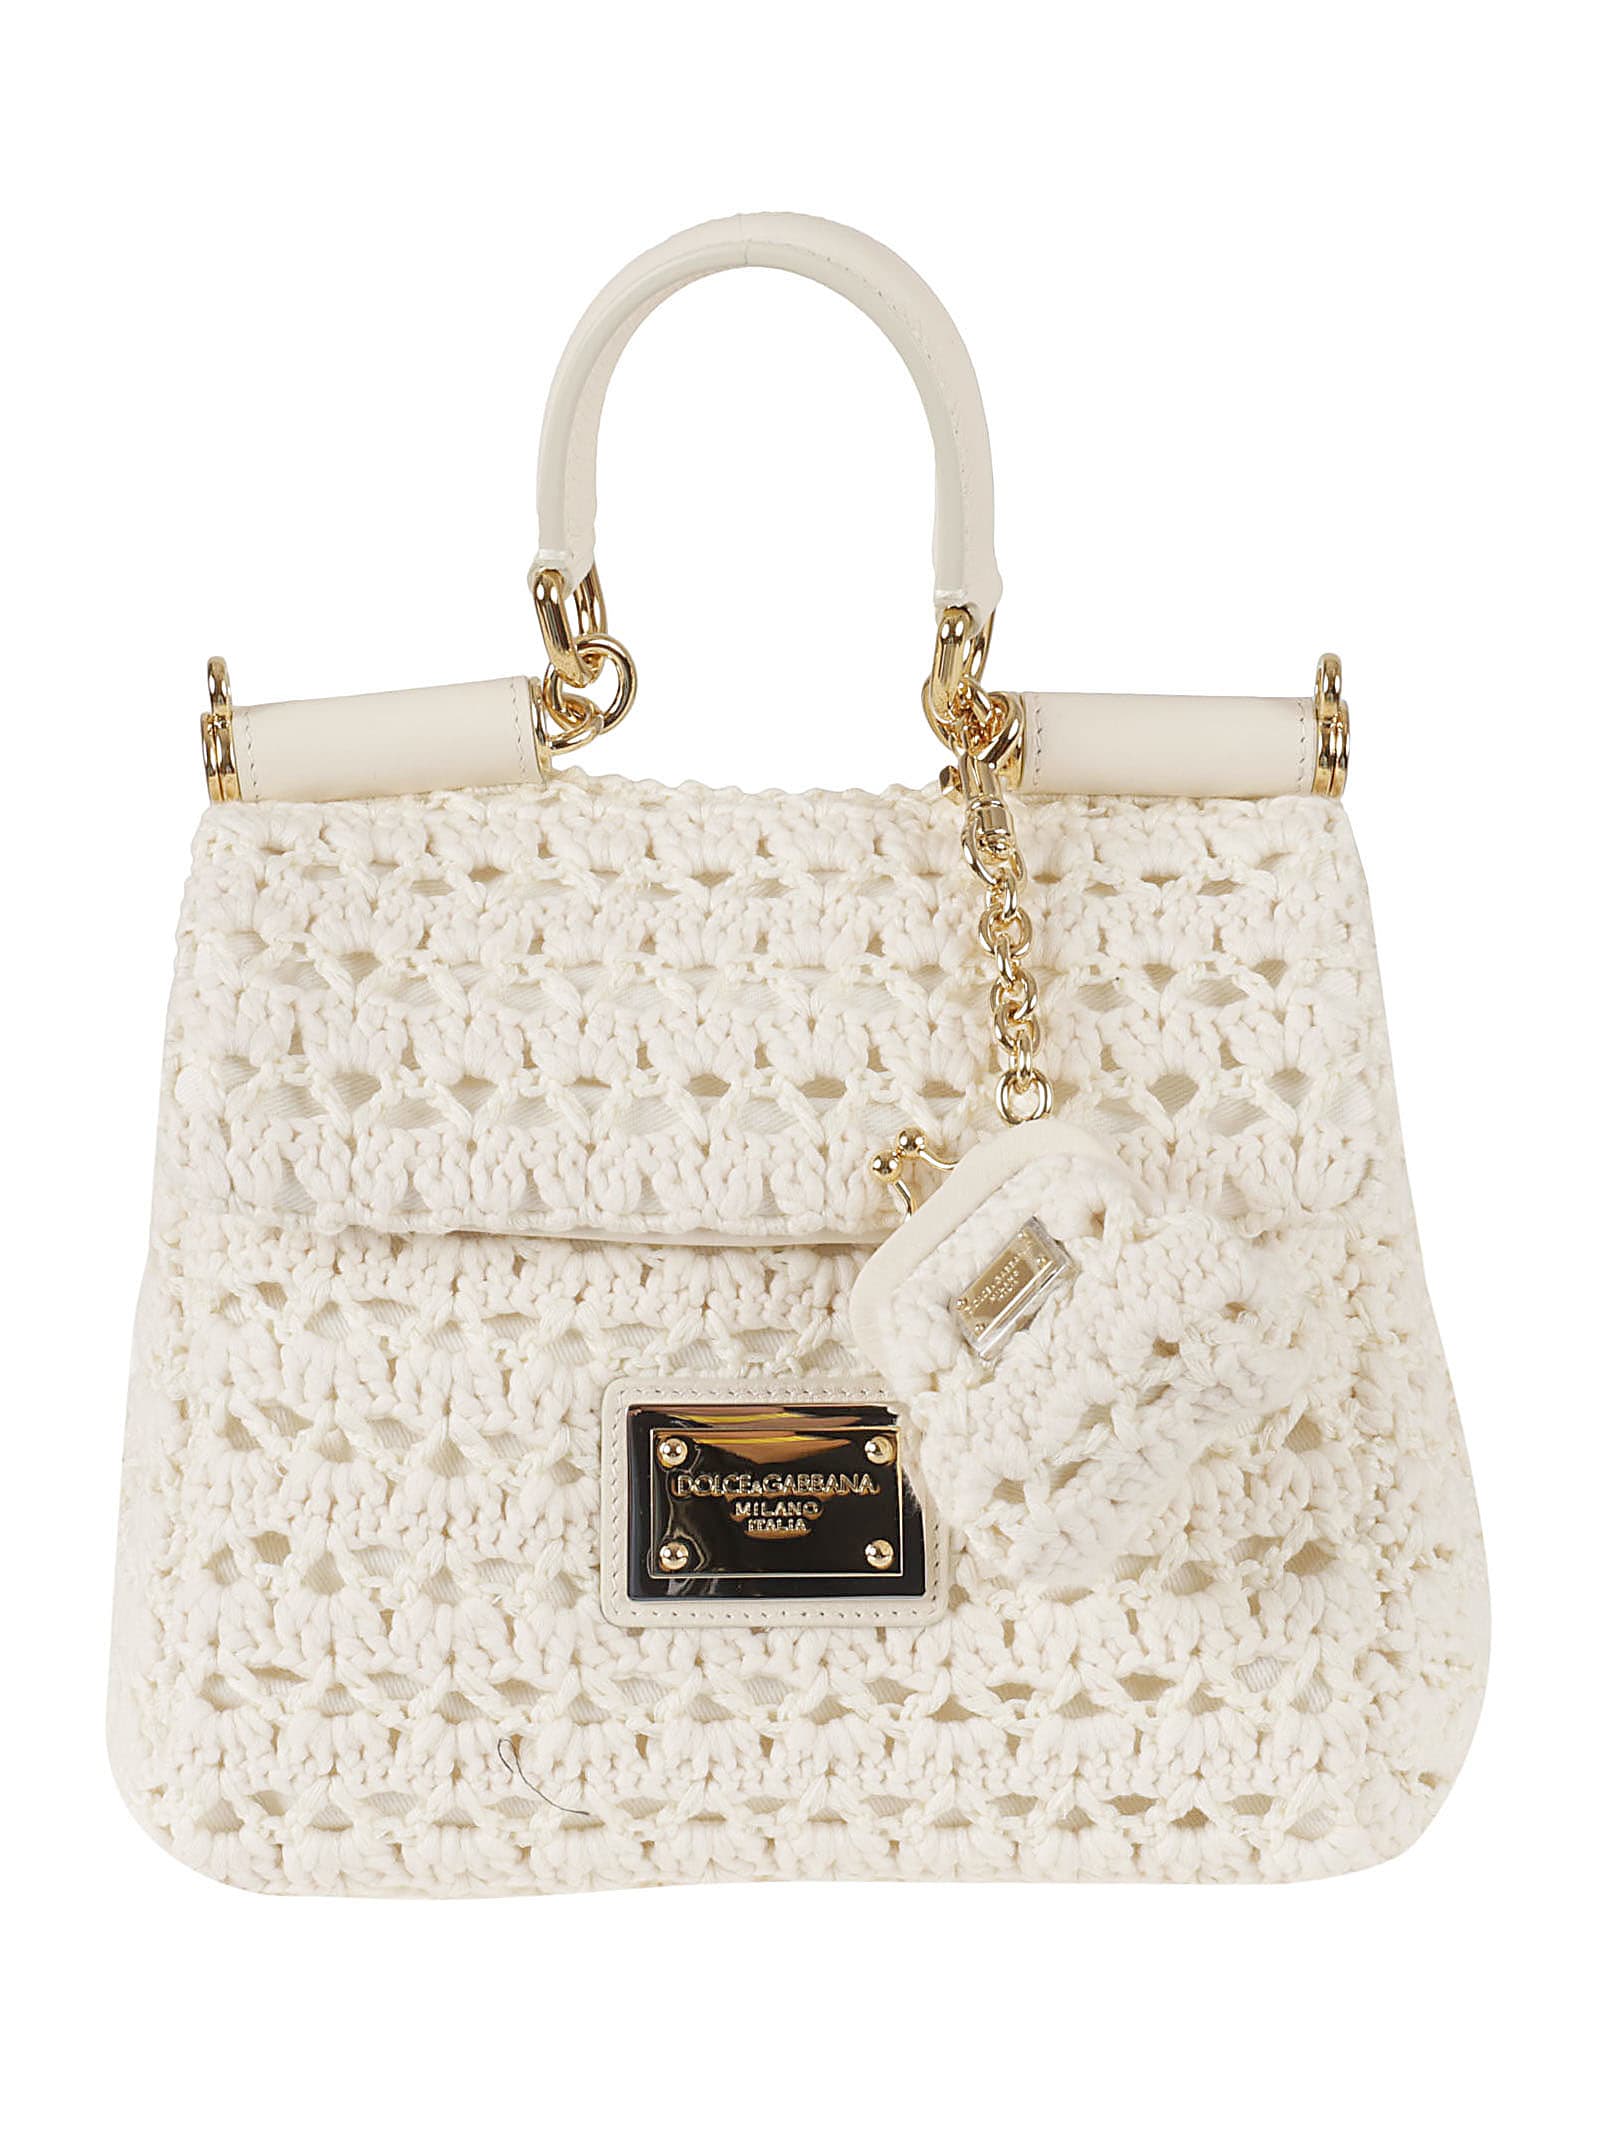 Dolce & Gabbana Small Sicily Shoulder Bag in Natural